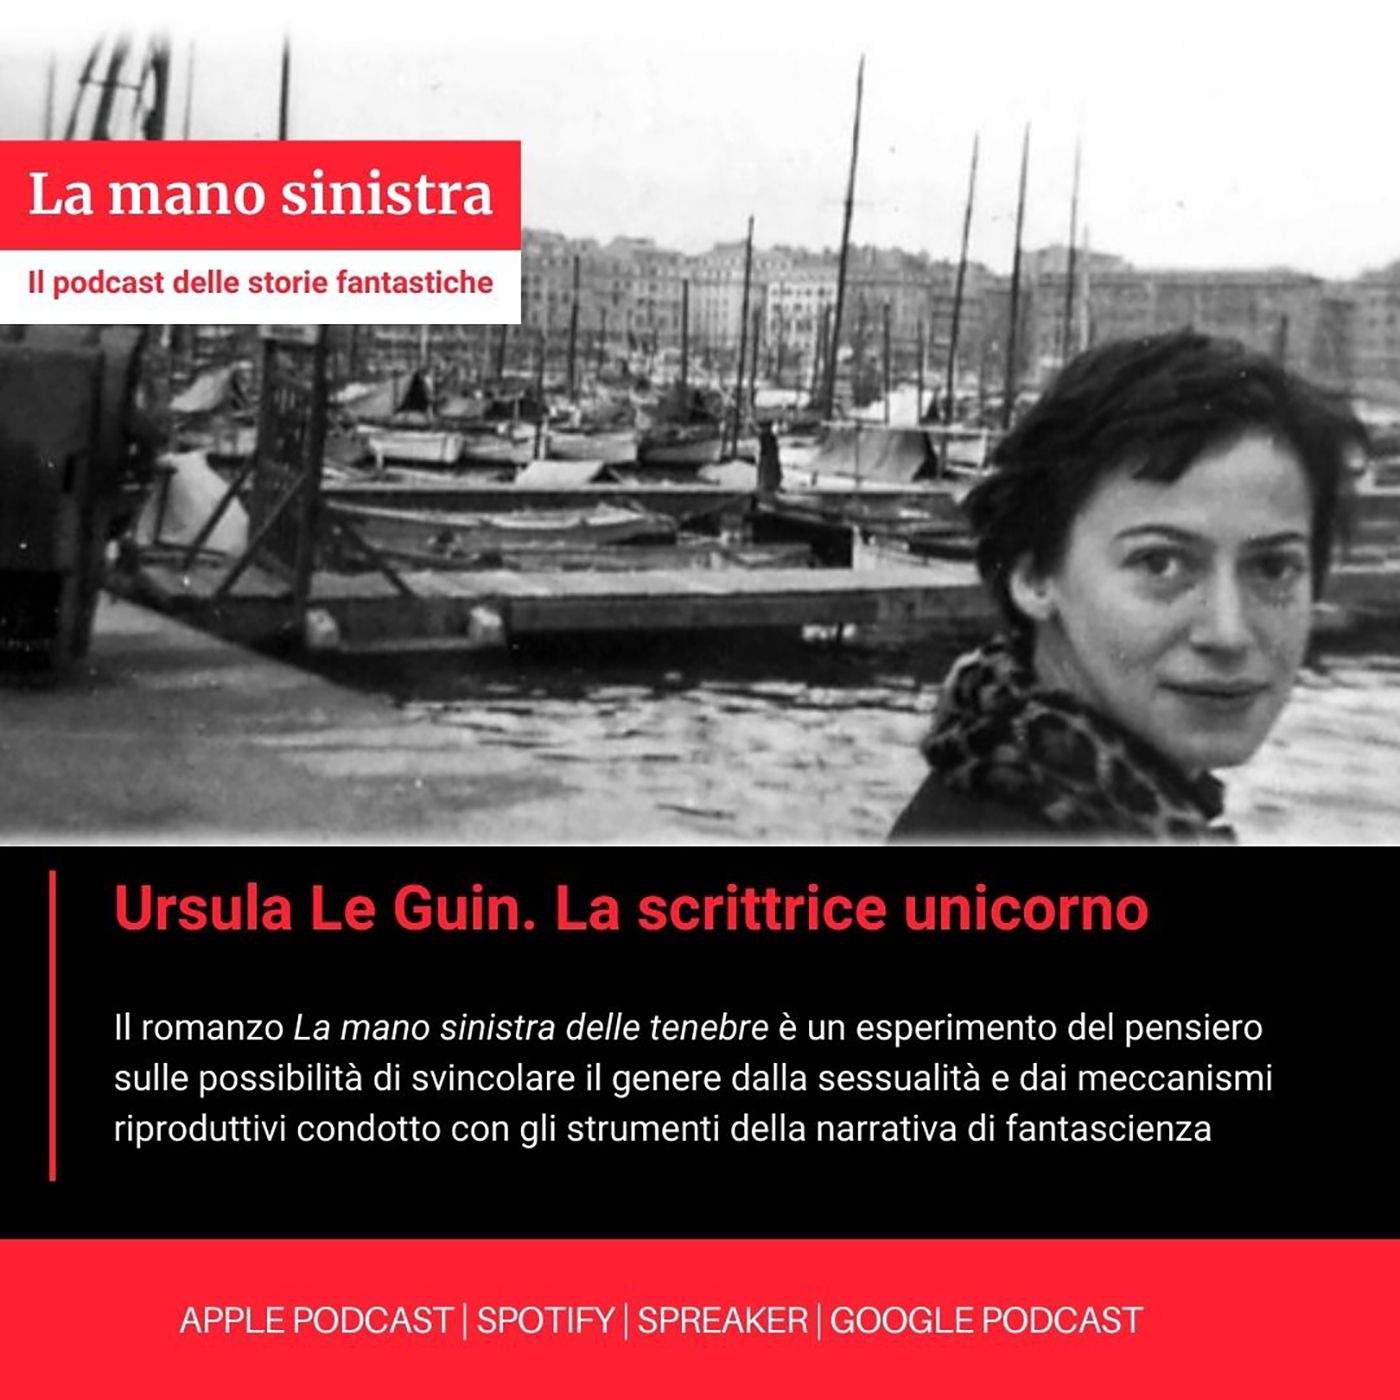 Ursula Le Guin. La scrittrice unicorno